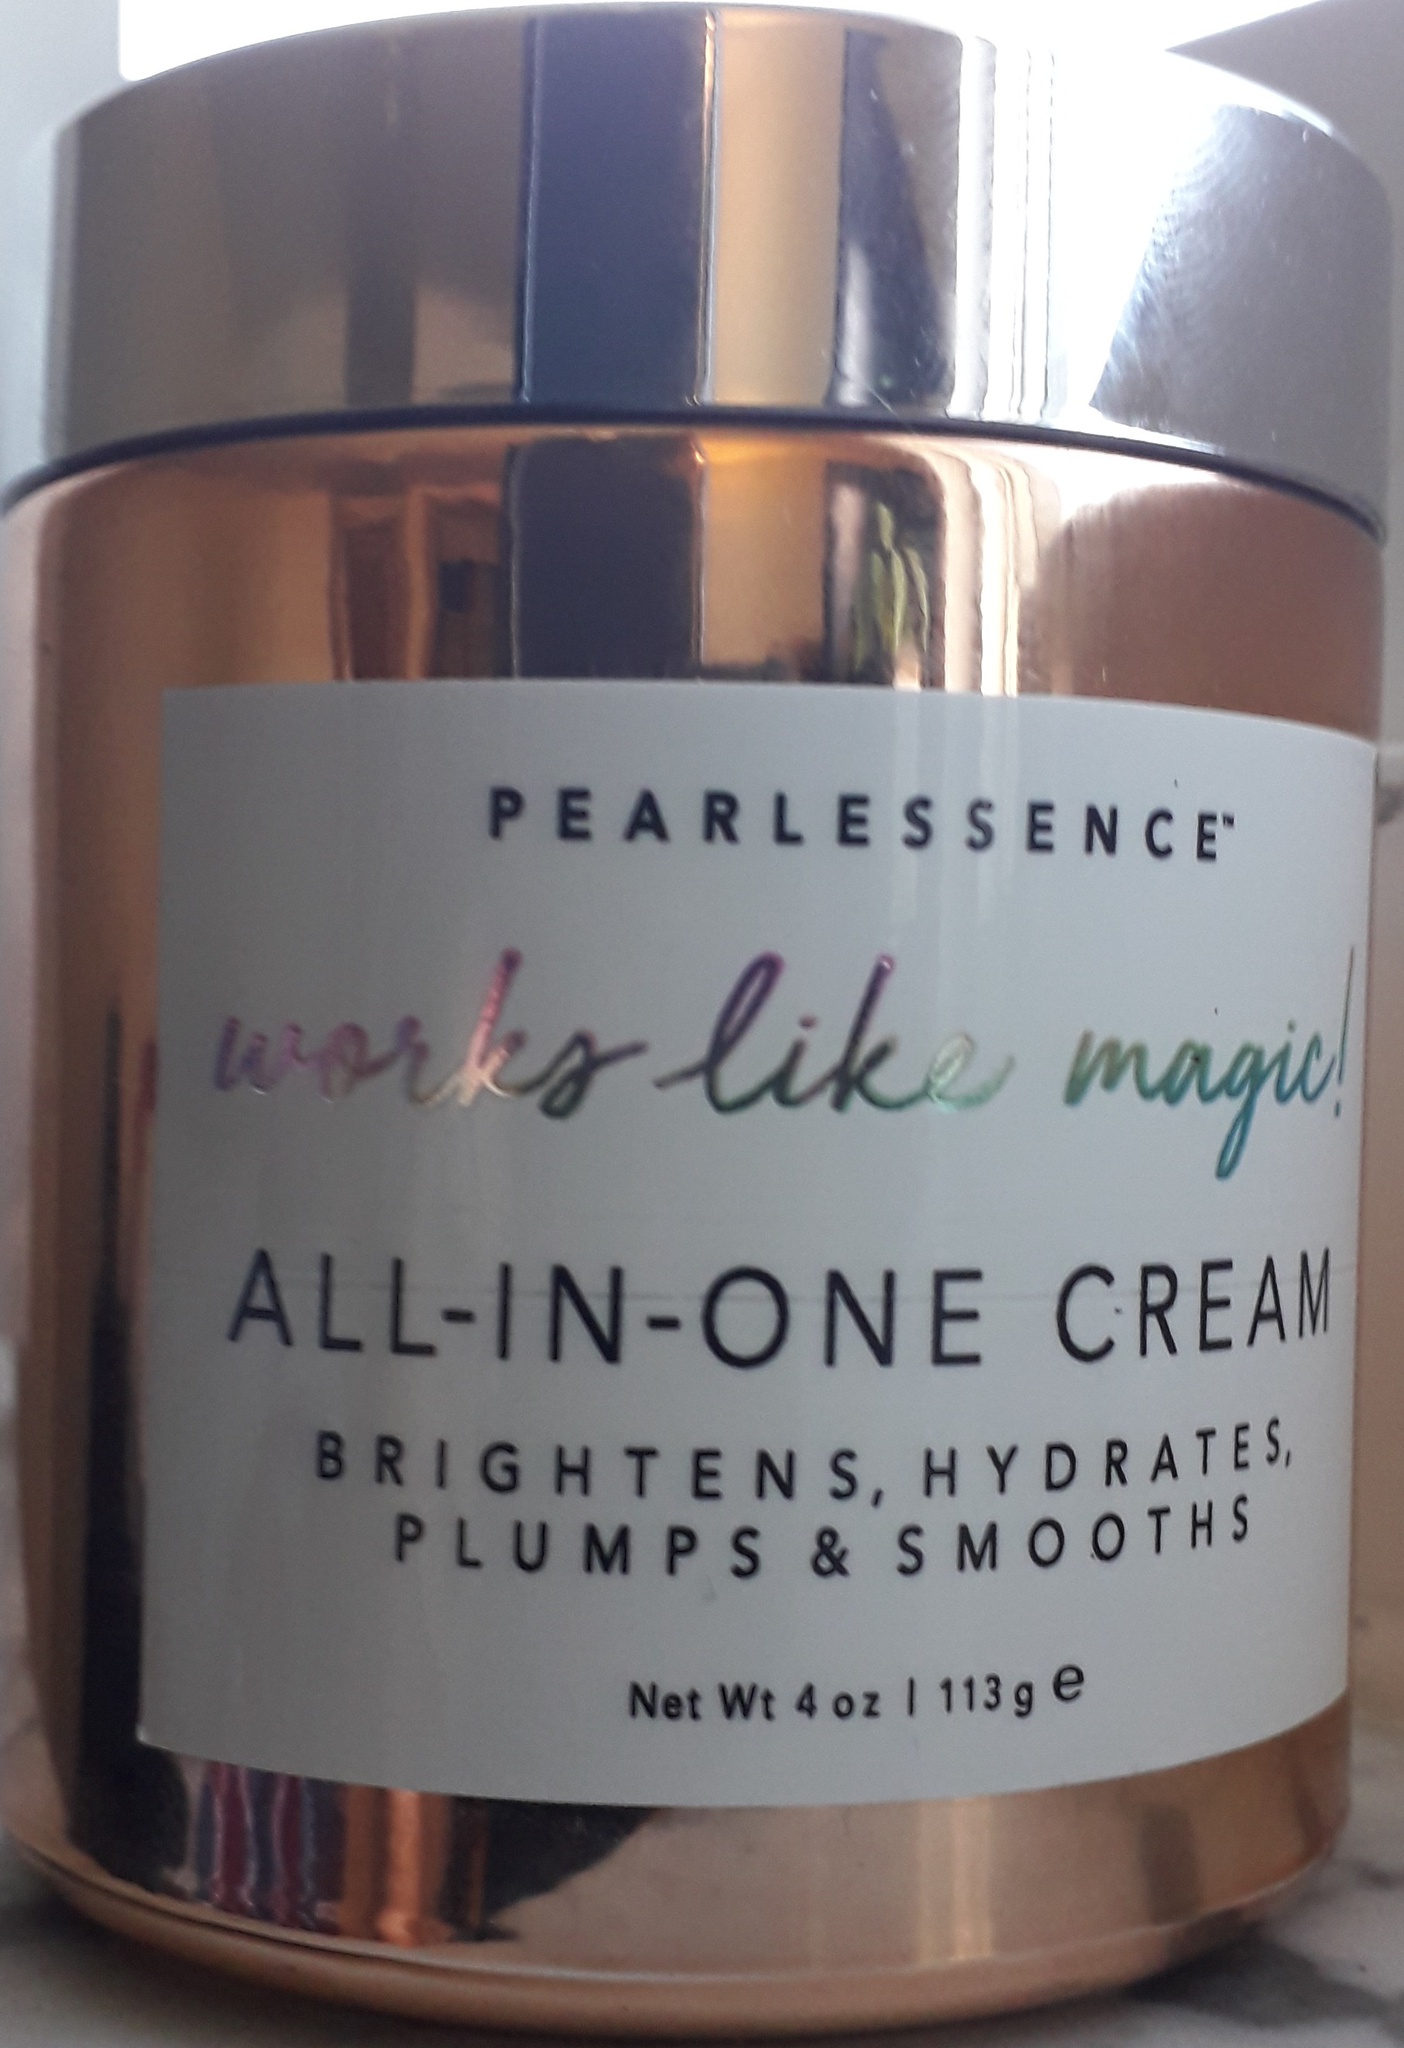 Pearlessence Works Like Magic | All-in-one Cream